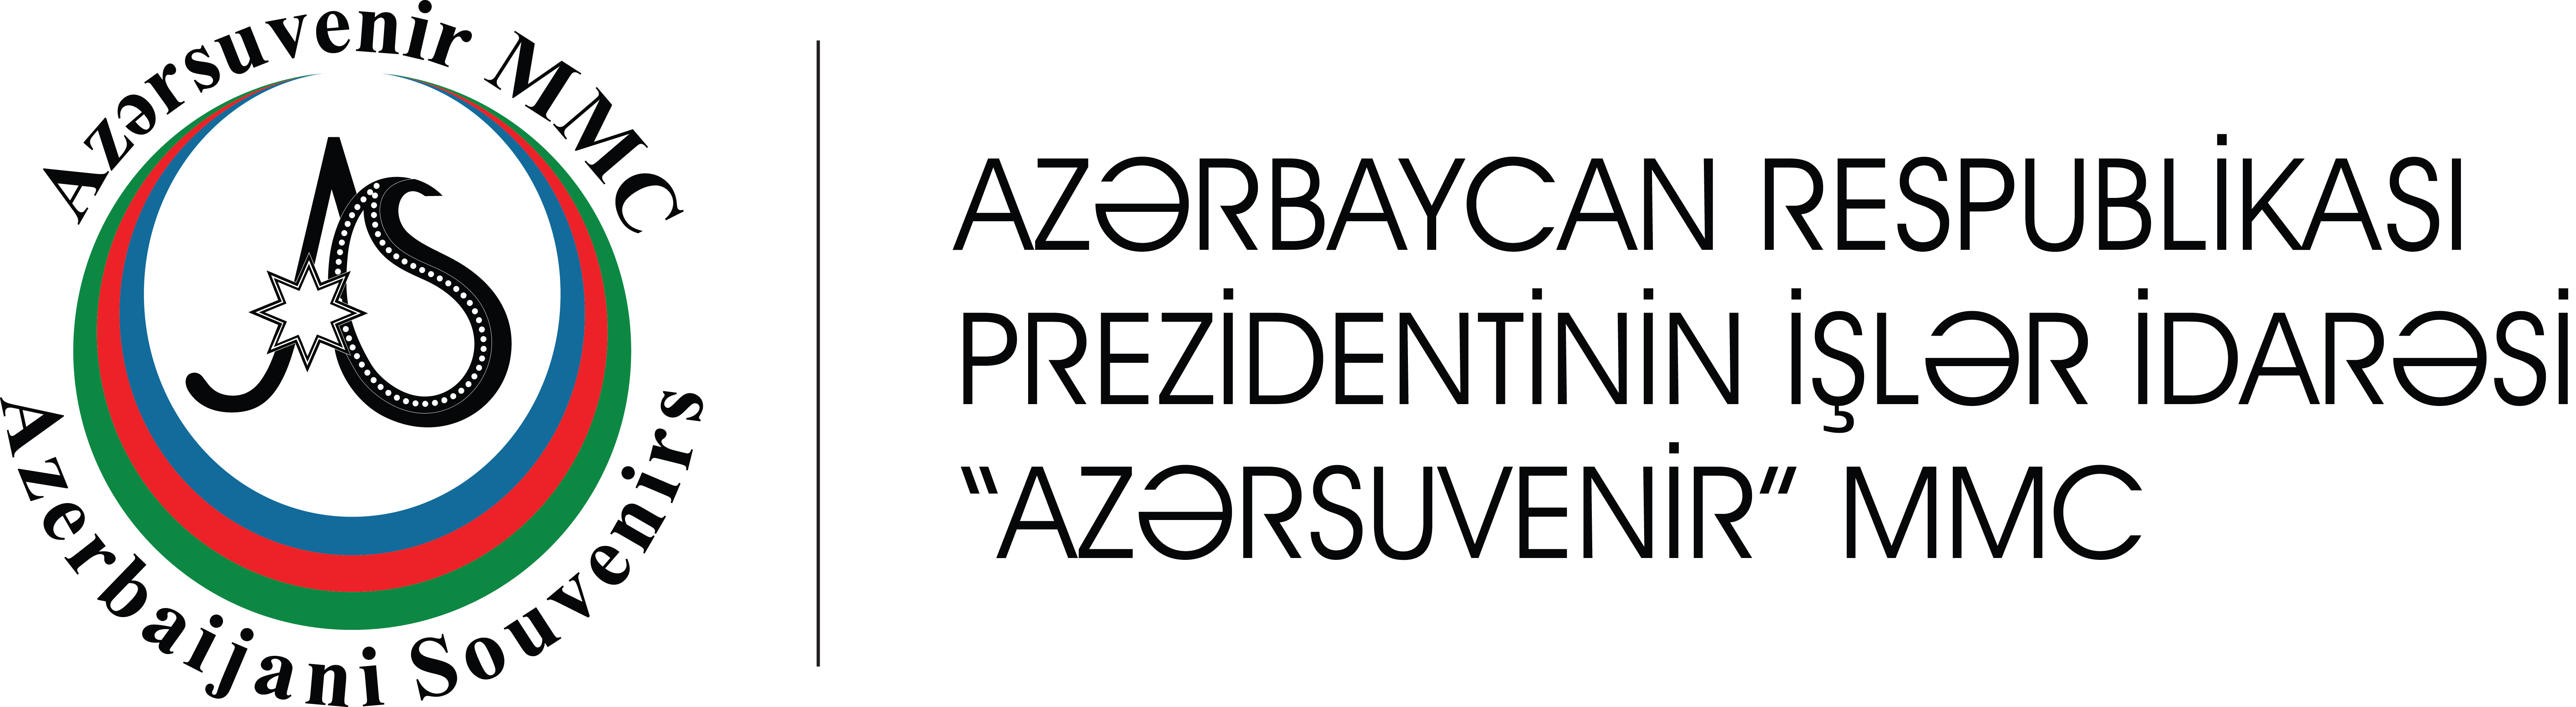 Azərsuvenir MMC